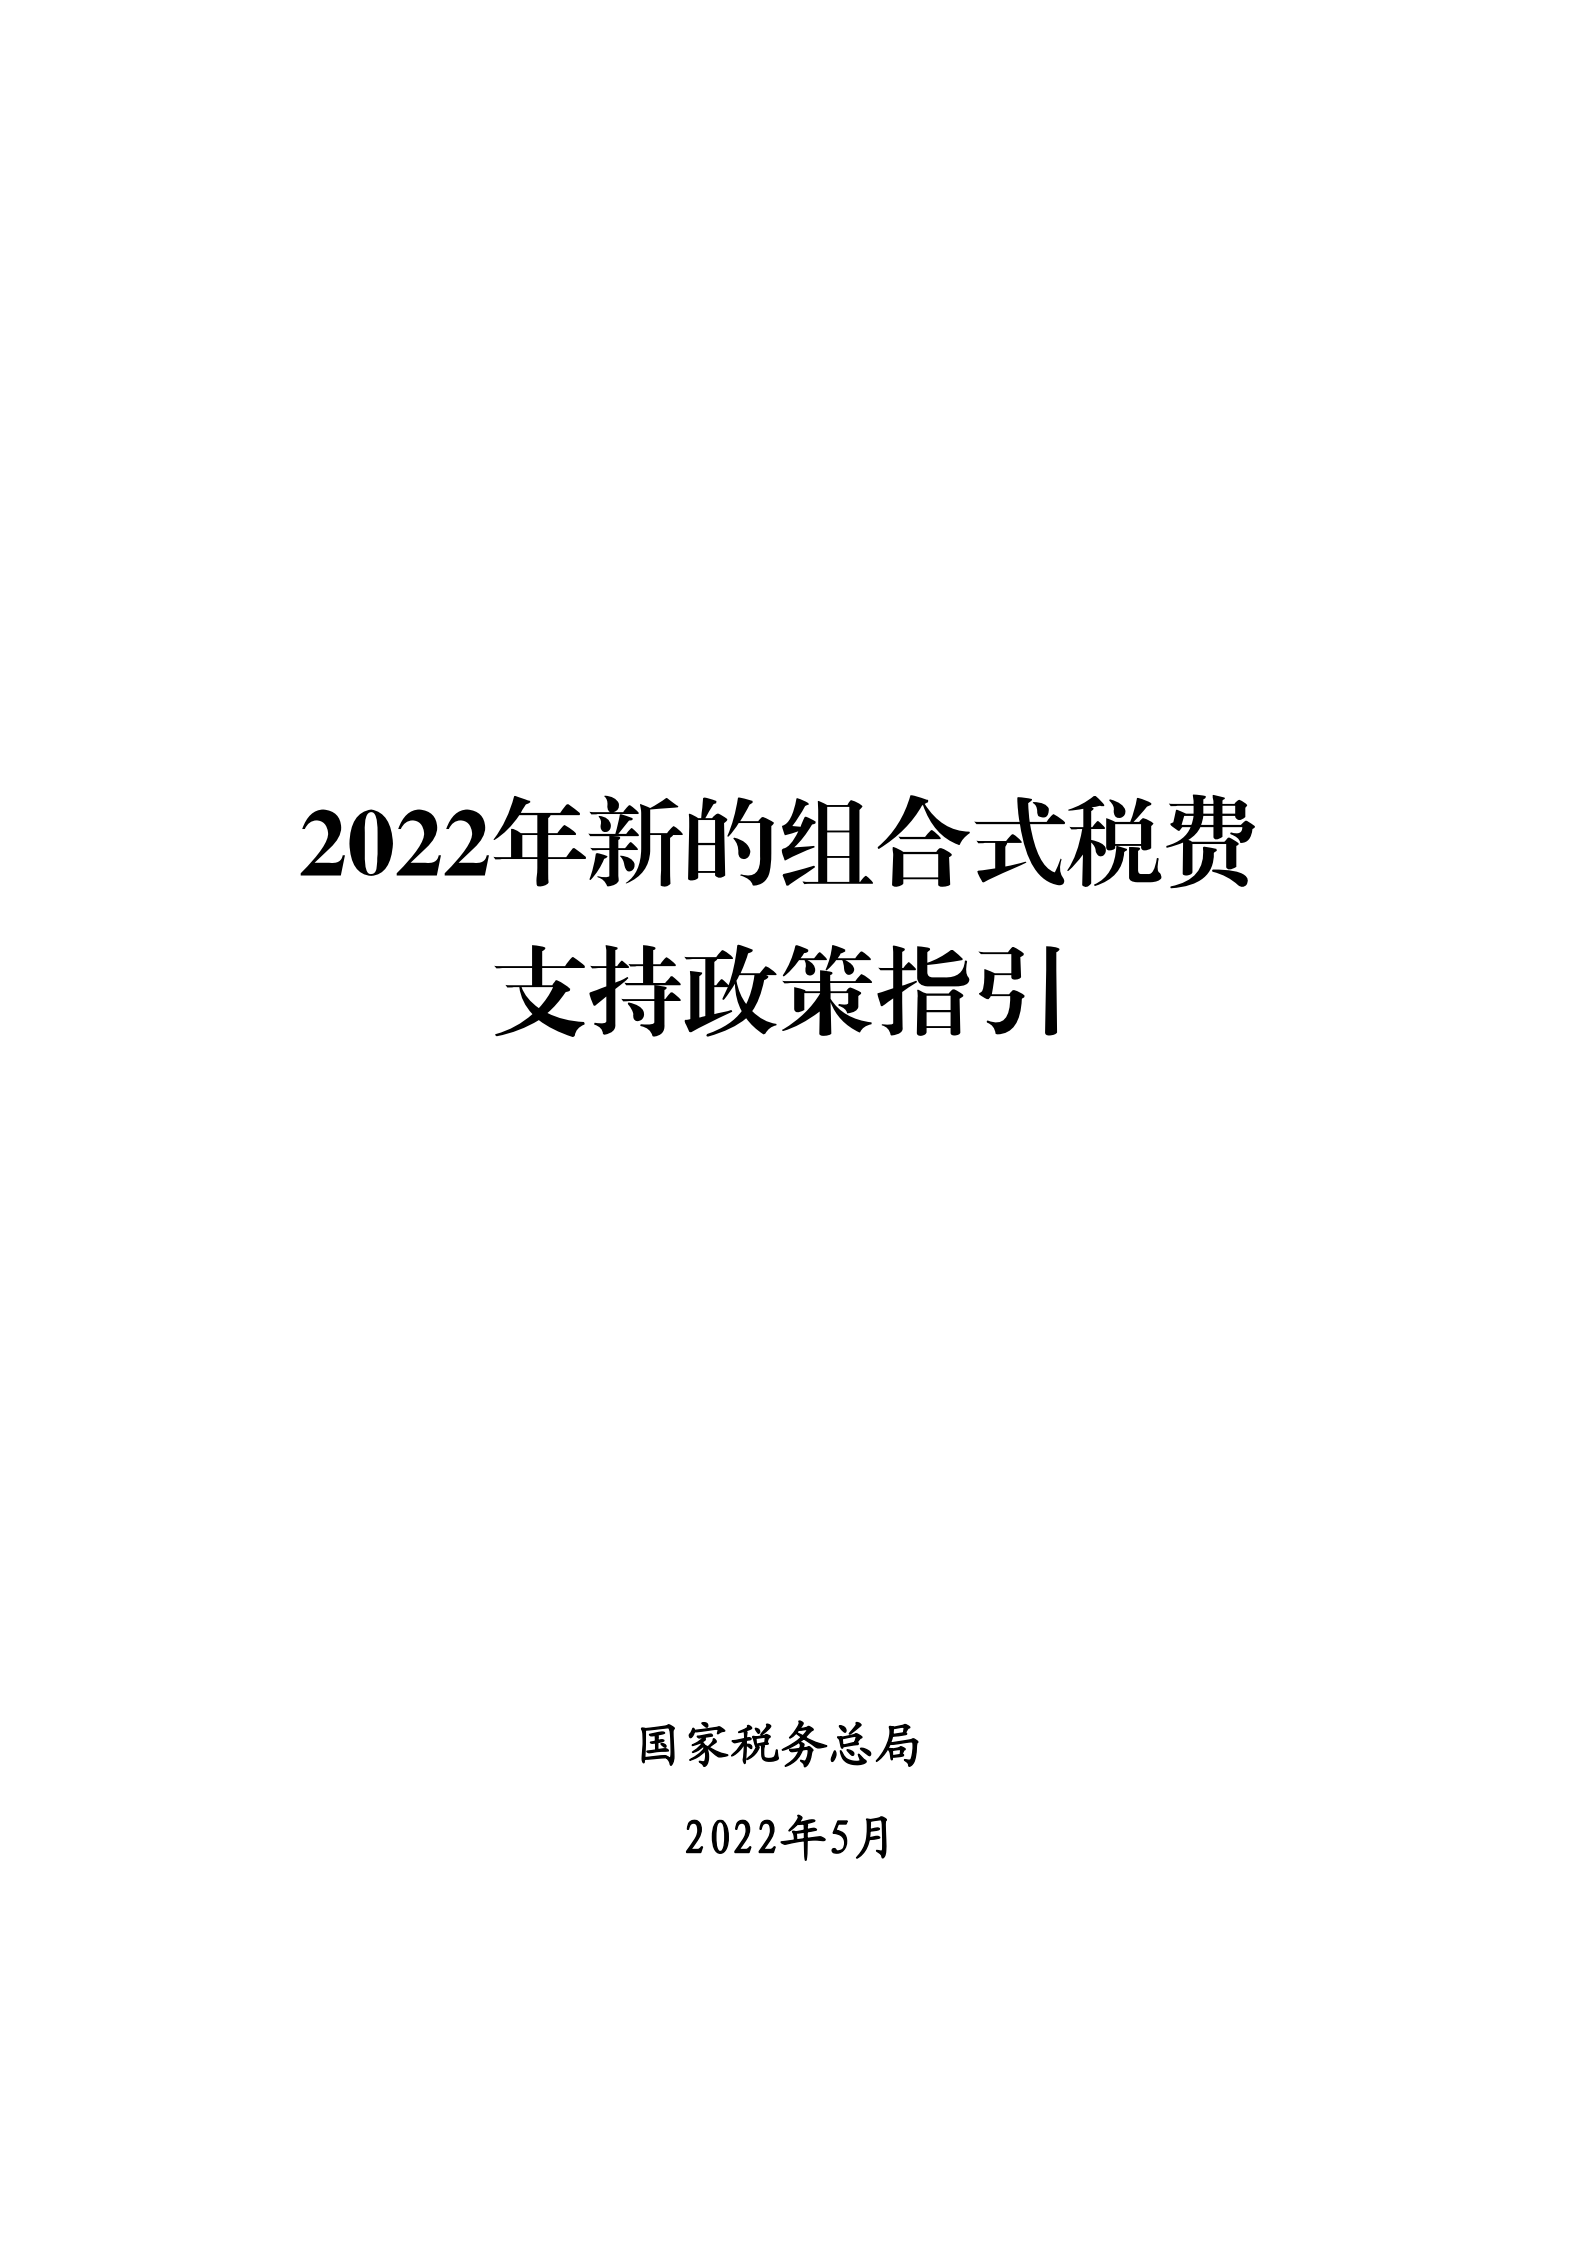 2022年新的组合式税费支持政策指引_00